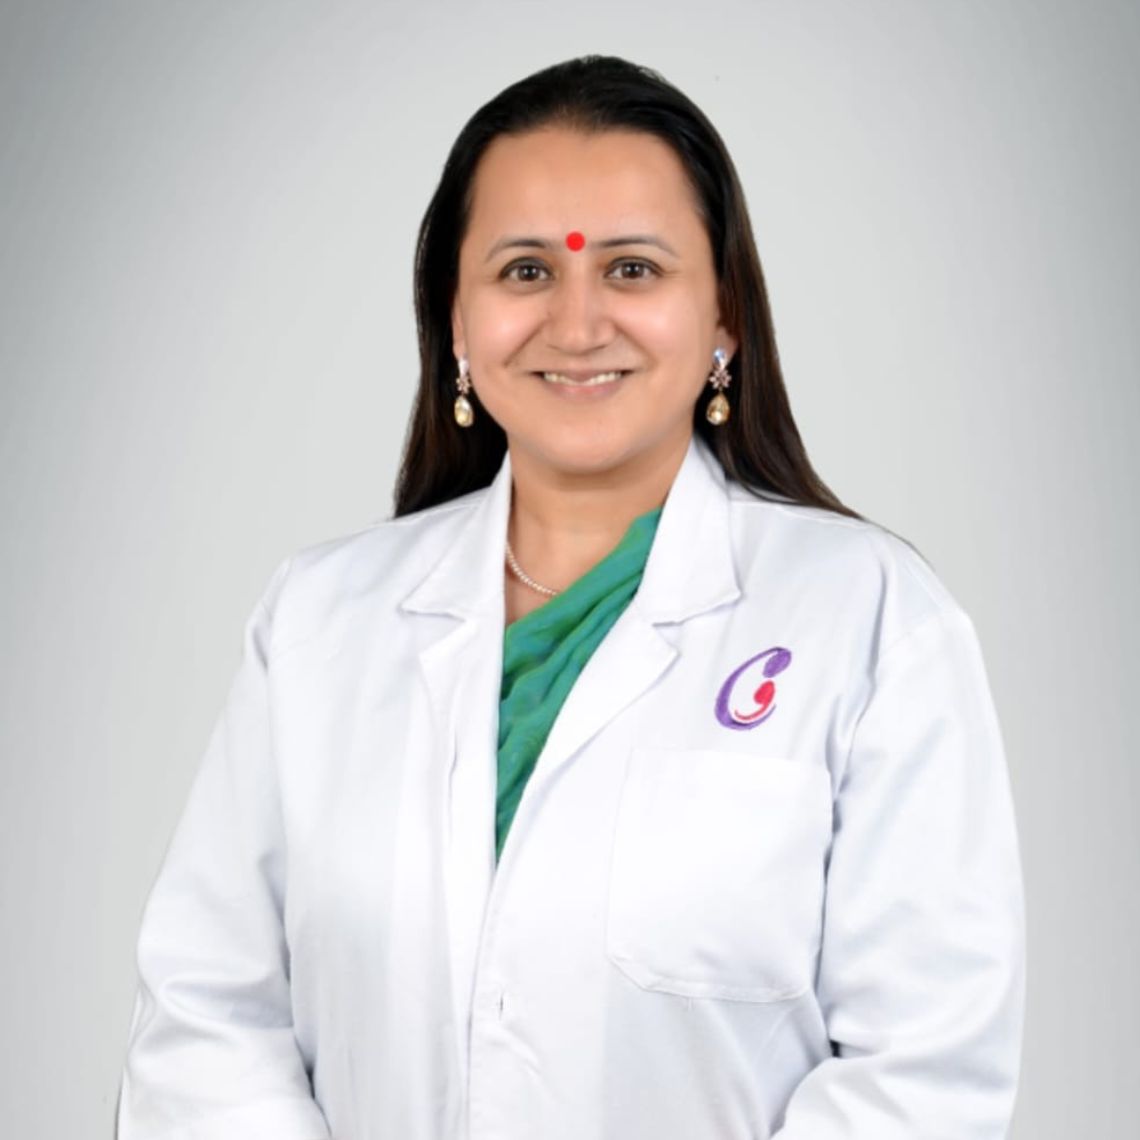 Dr. Priyanka Bhadana